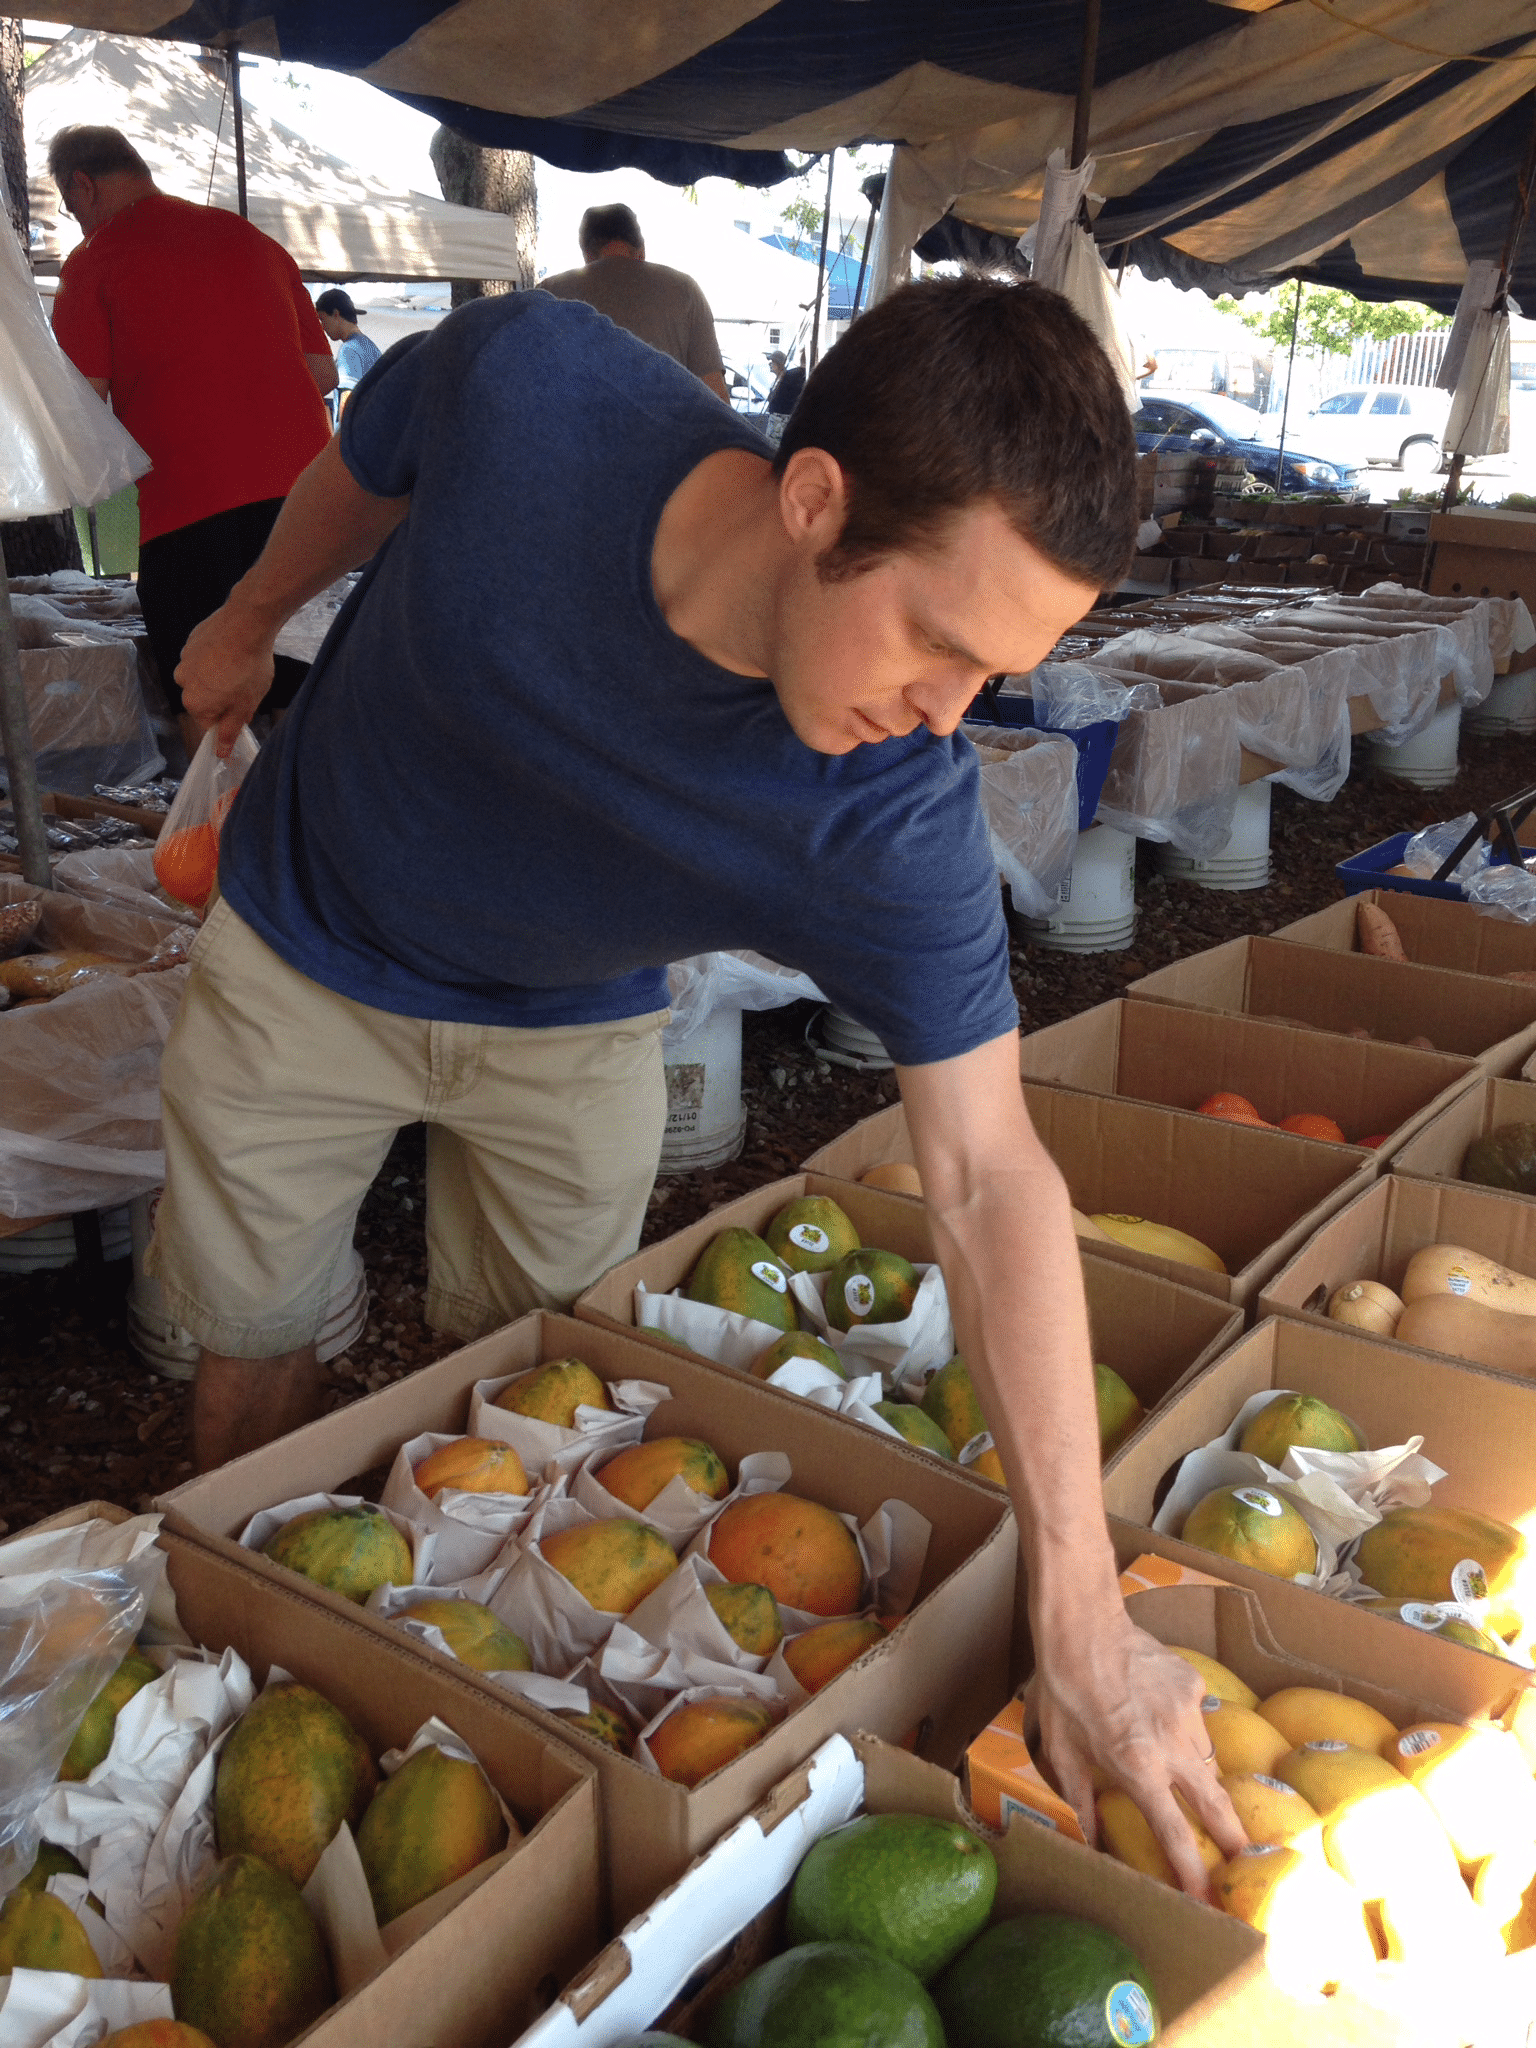 Matt buying fresh fruit in Miami